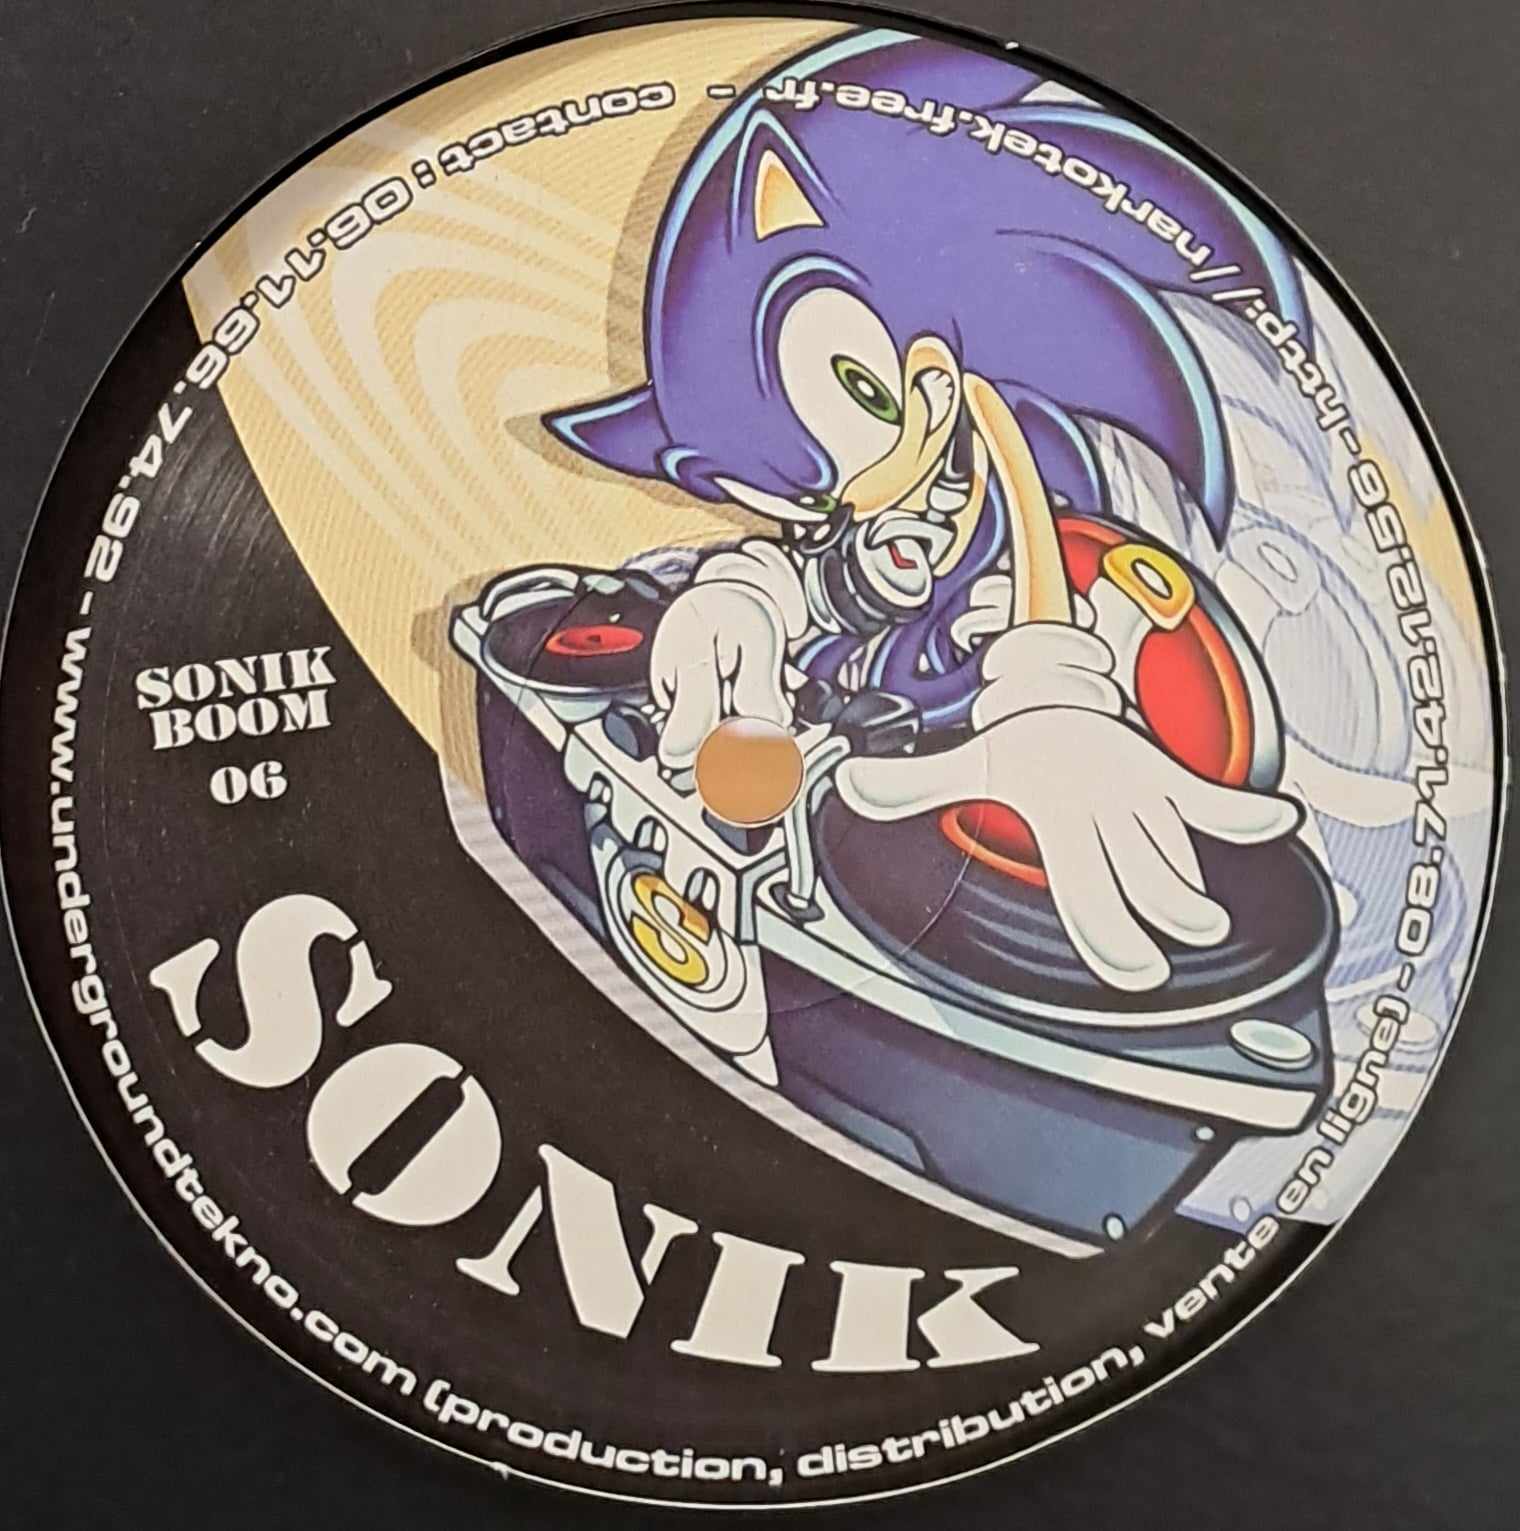 Sonik Boom 06 - vinyle freetekno